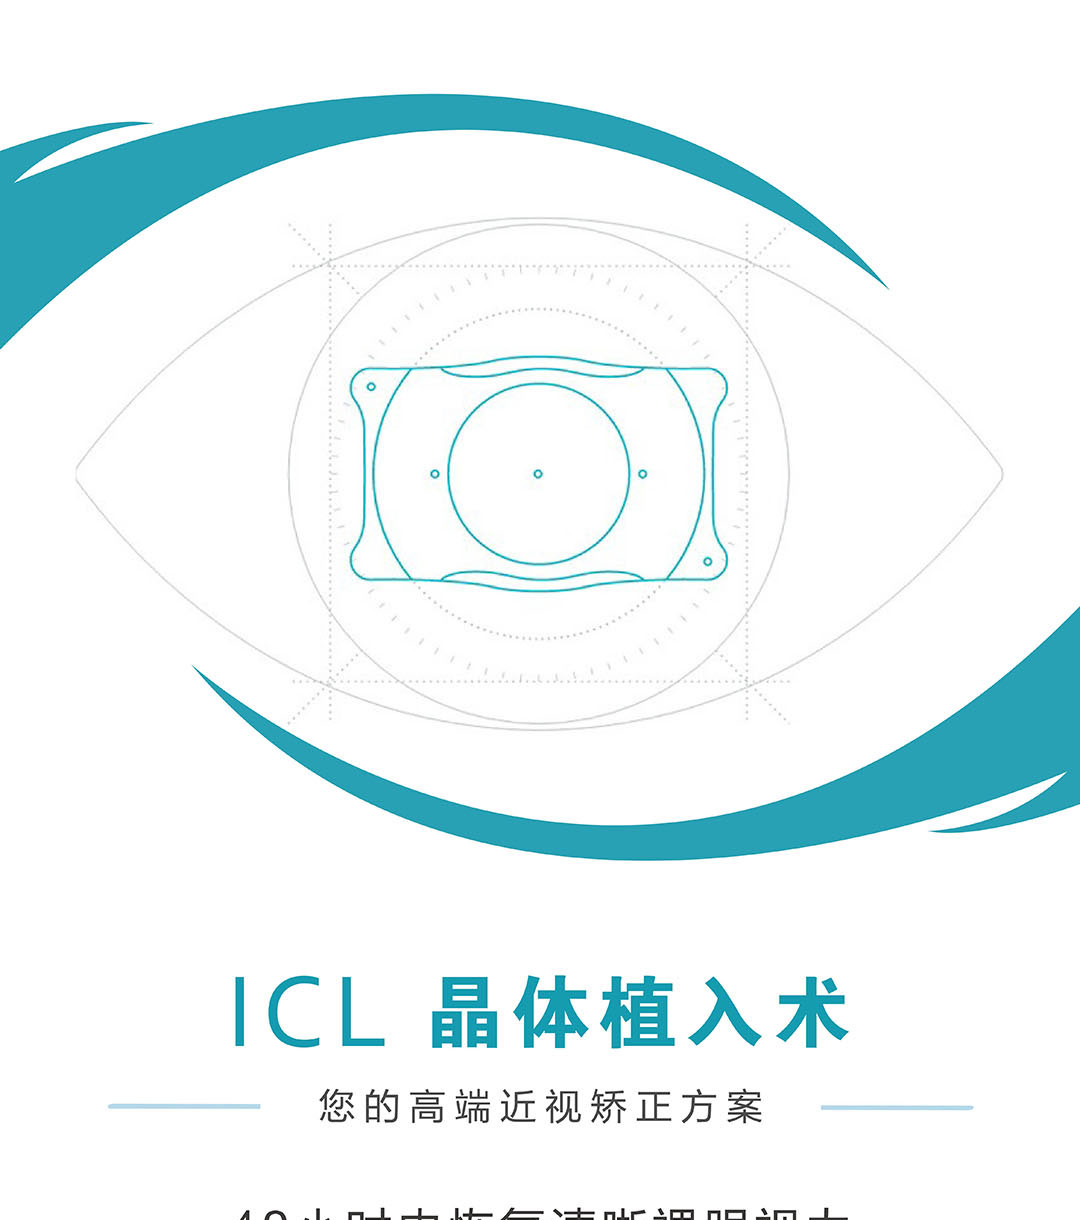 icl晶体植入:快速恢复视力,轻松摘掉眼镜!